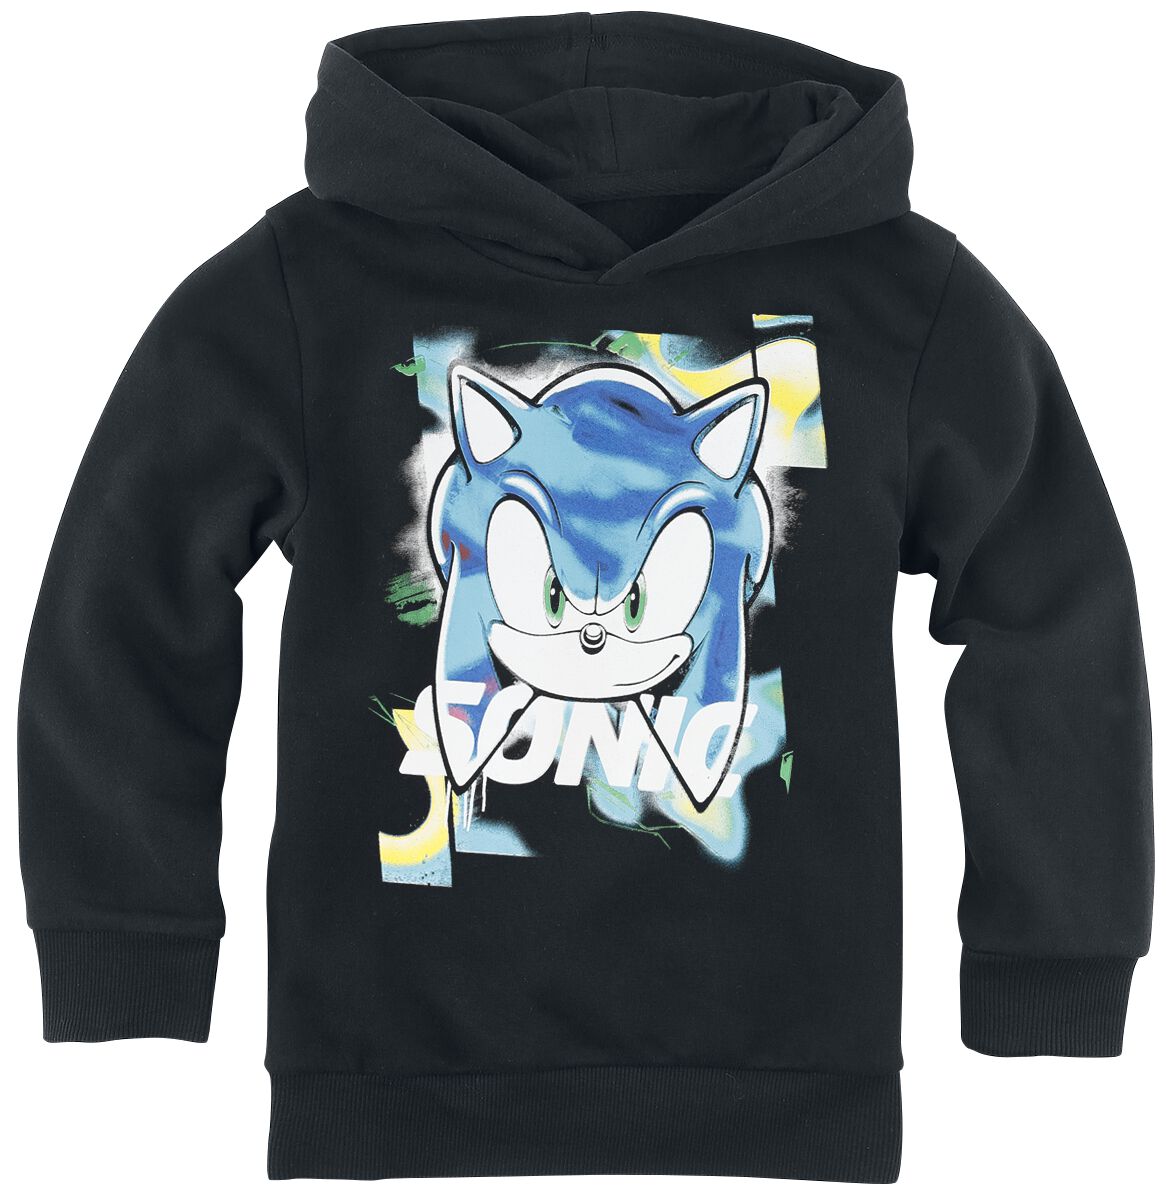 Sonic The Hedgehog - Gaming Kapuzenpullover für Kleinkinder - Kids - Sonic Face - für Mädchen & Jungen - schwarz  - EMP exklusives Merchandise!